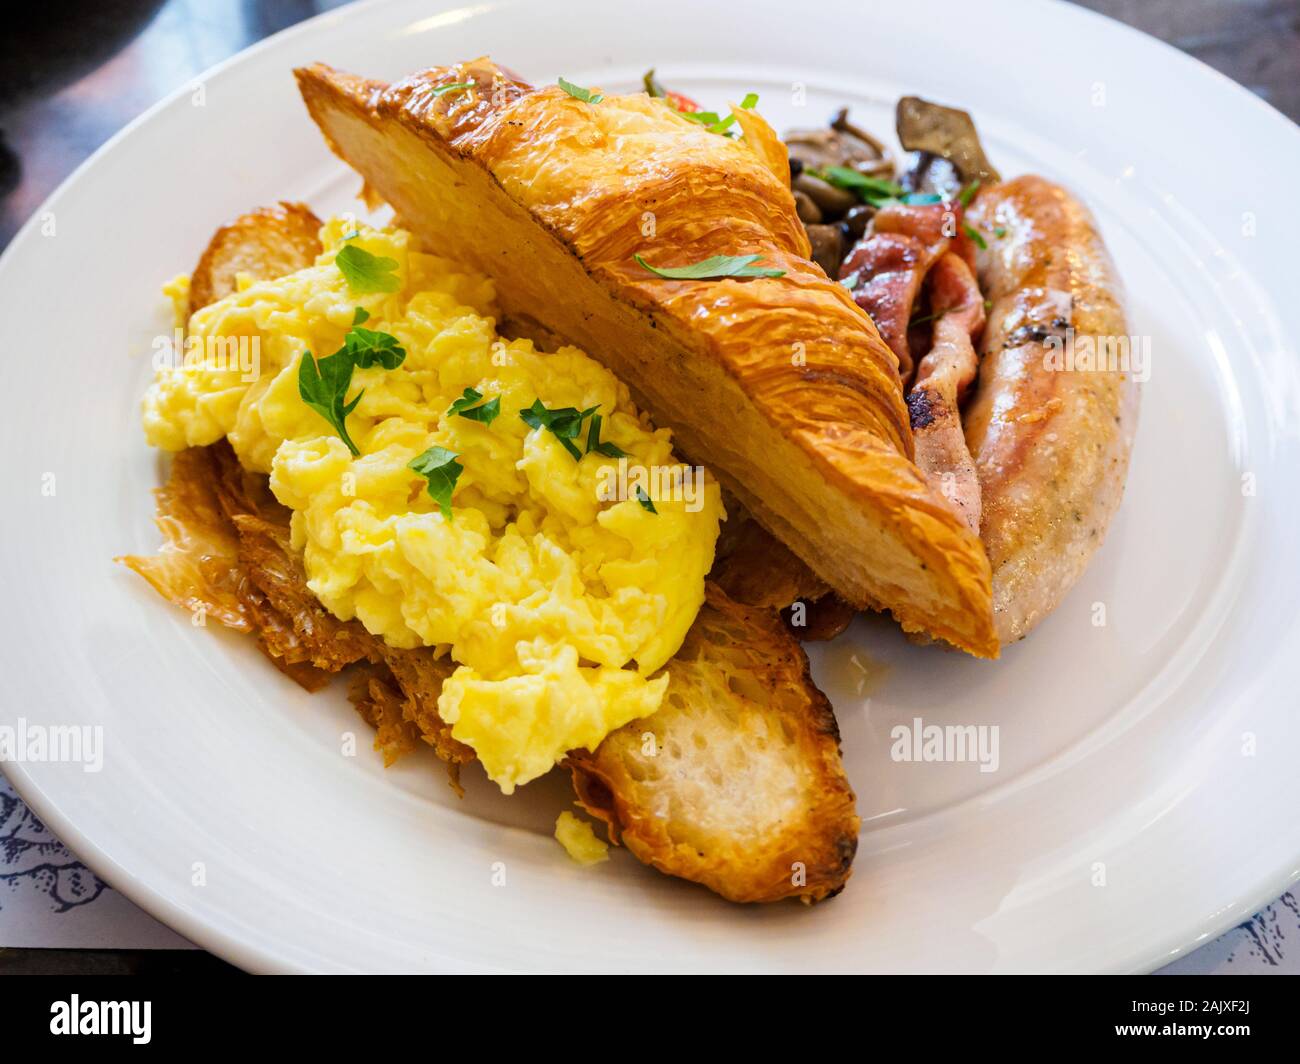 Ein ganztägiges Frühstück/Brunch combo Mahlzeit Teller mit Rührei, Croissants, Wurst, Speck und Pilzen auf eine weisse Platte bei einer Western casual Resta Stockfoto